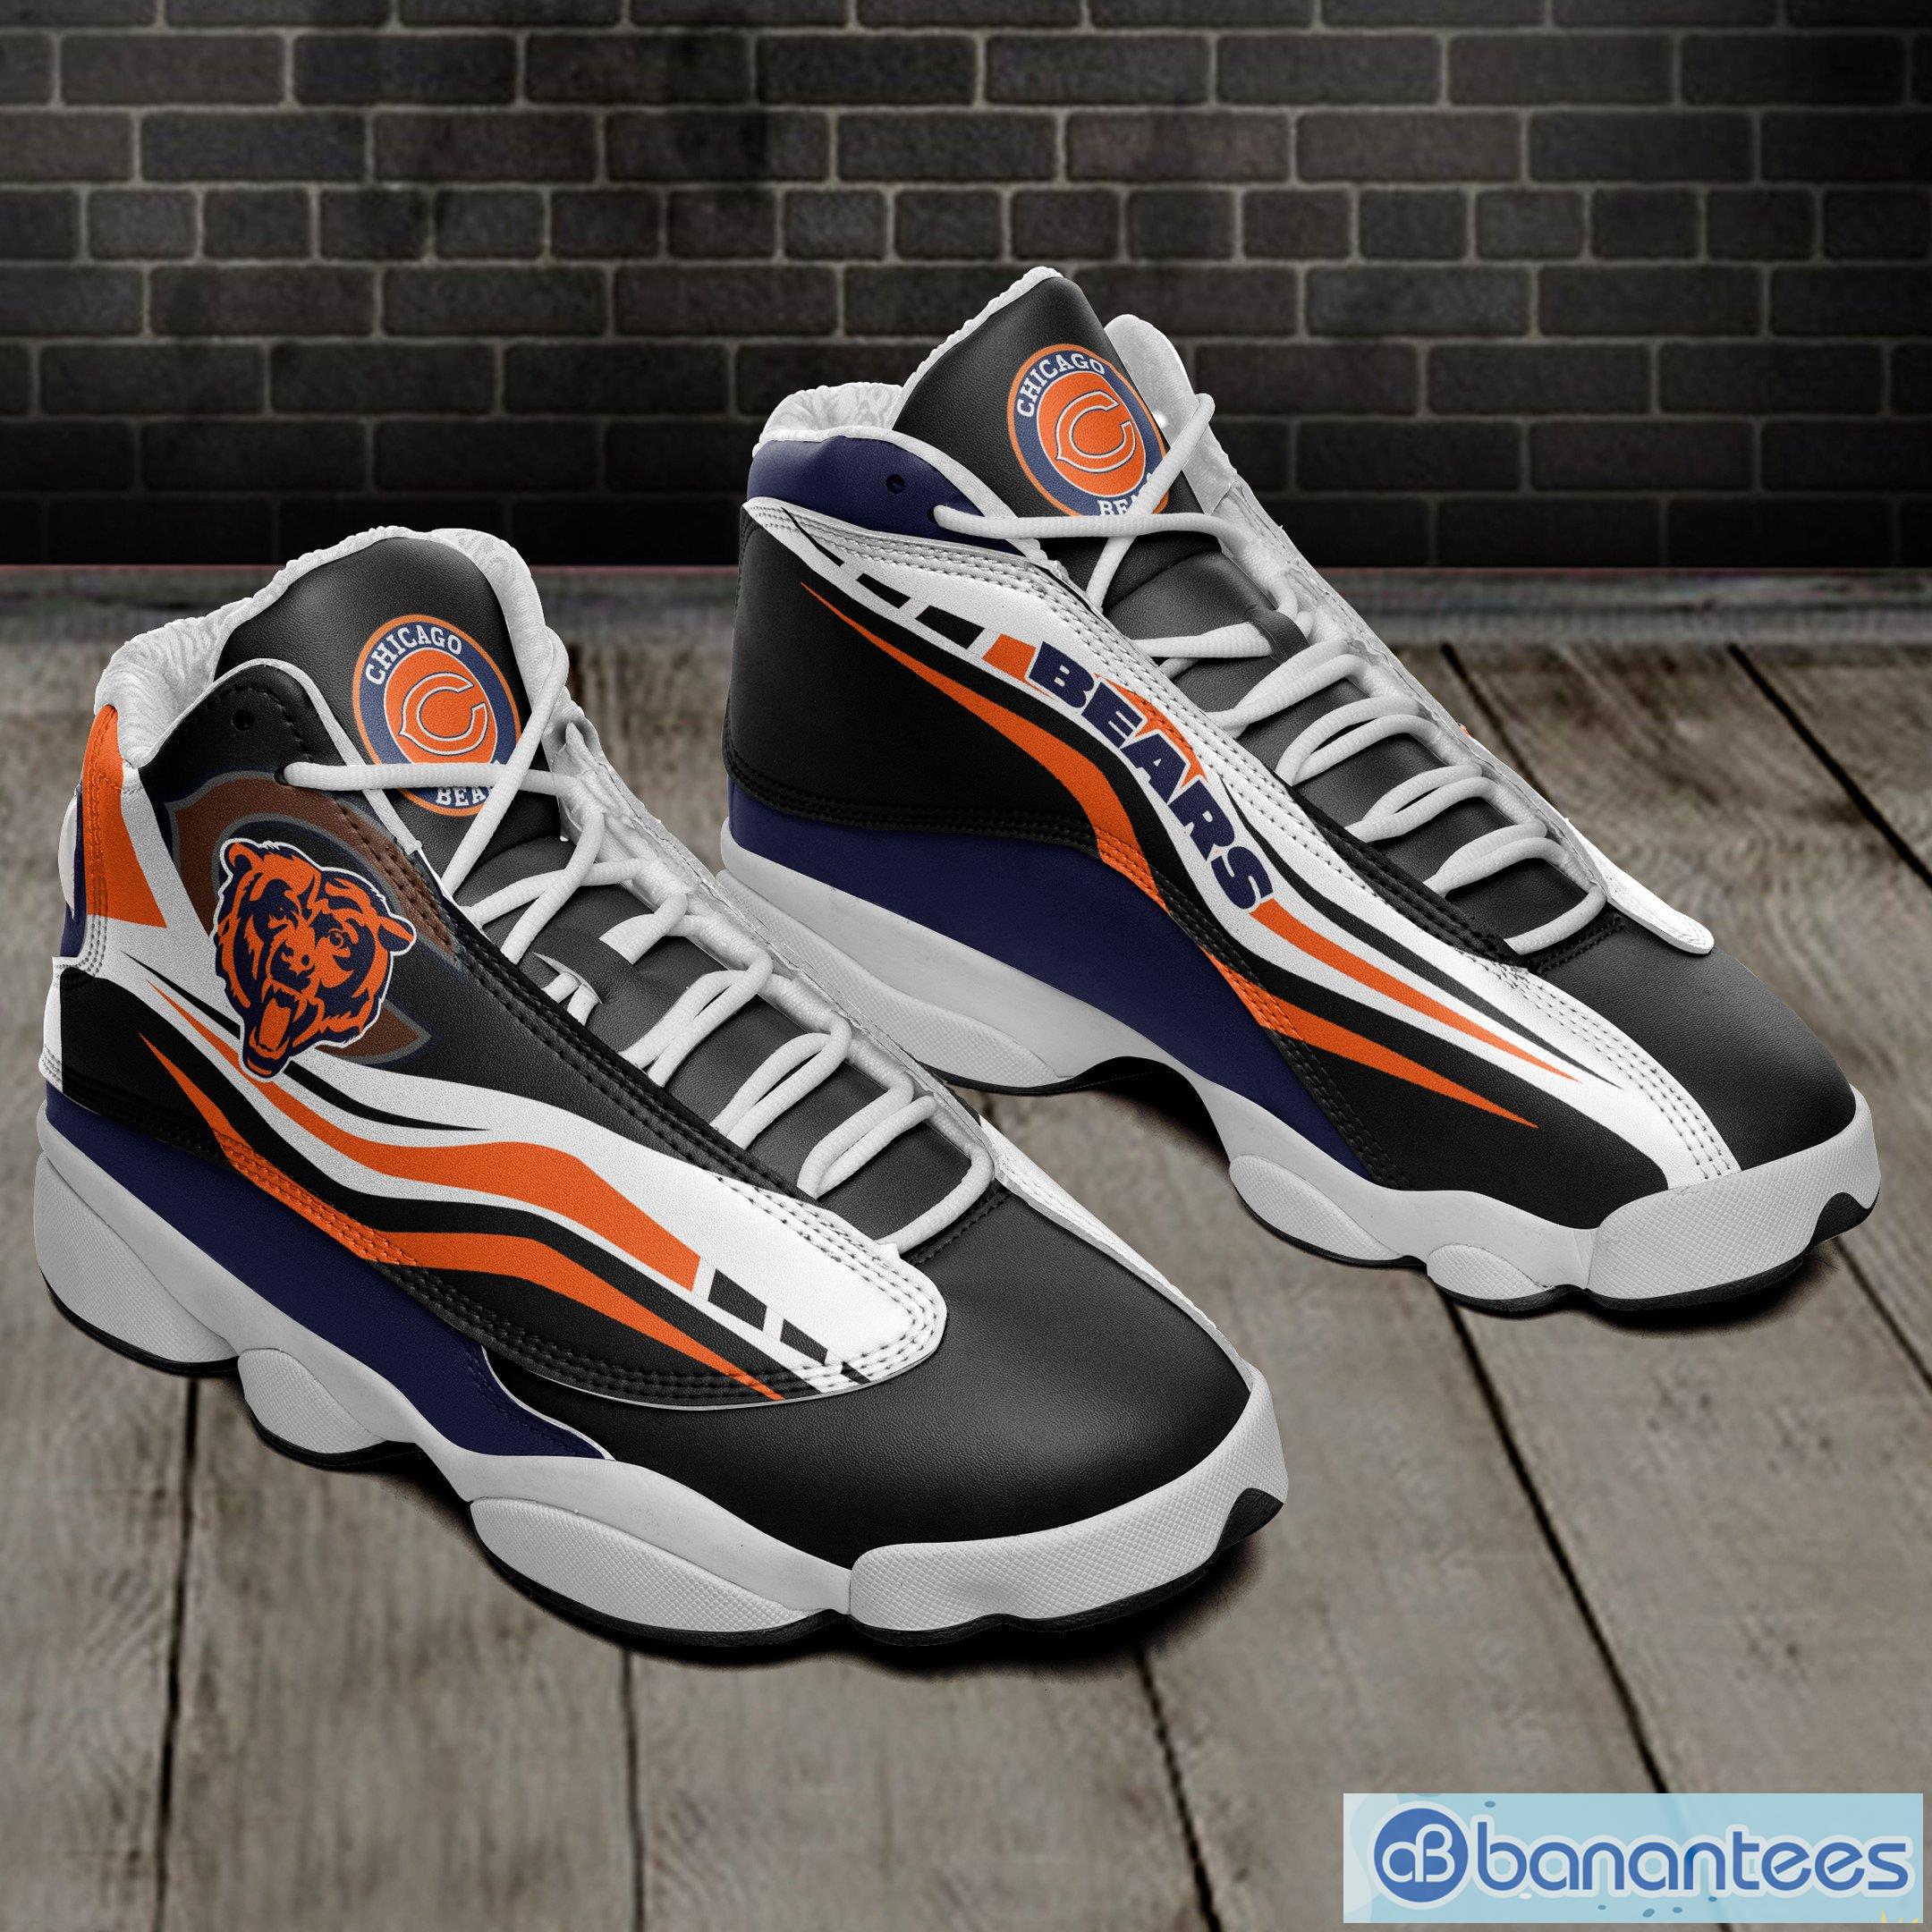 Custom Name October King Air Jordan 13 Sneaker Shoes - Banantees